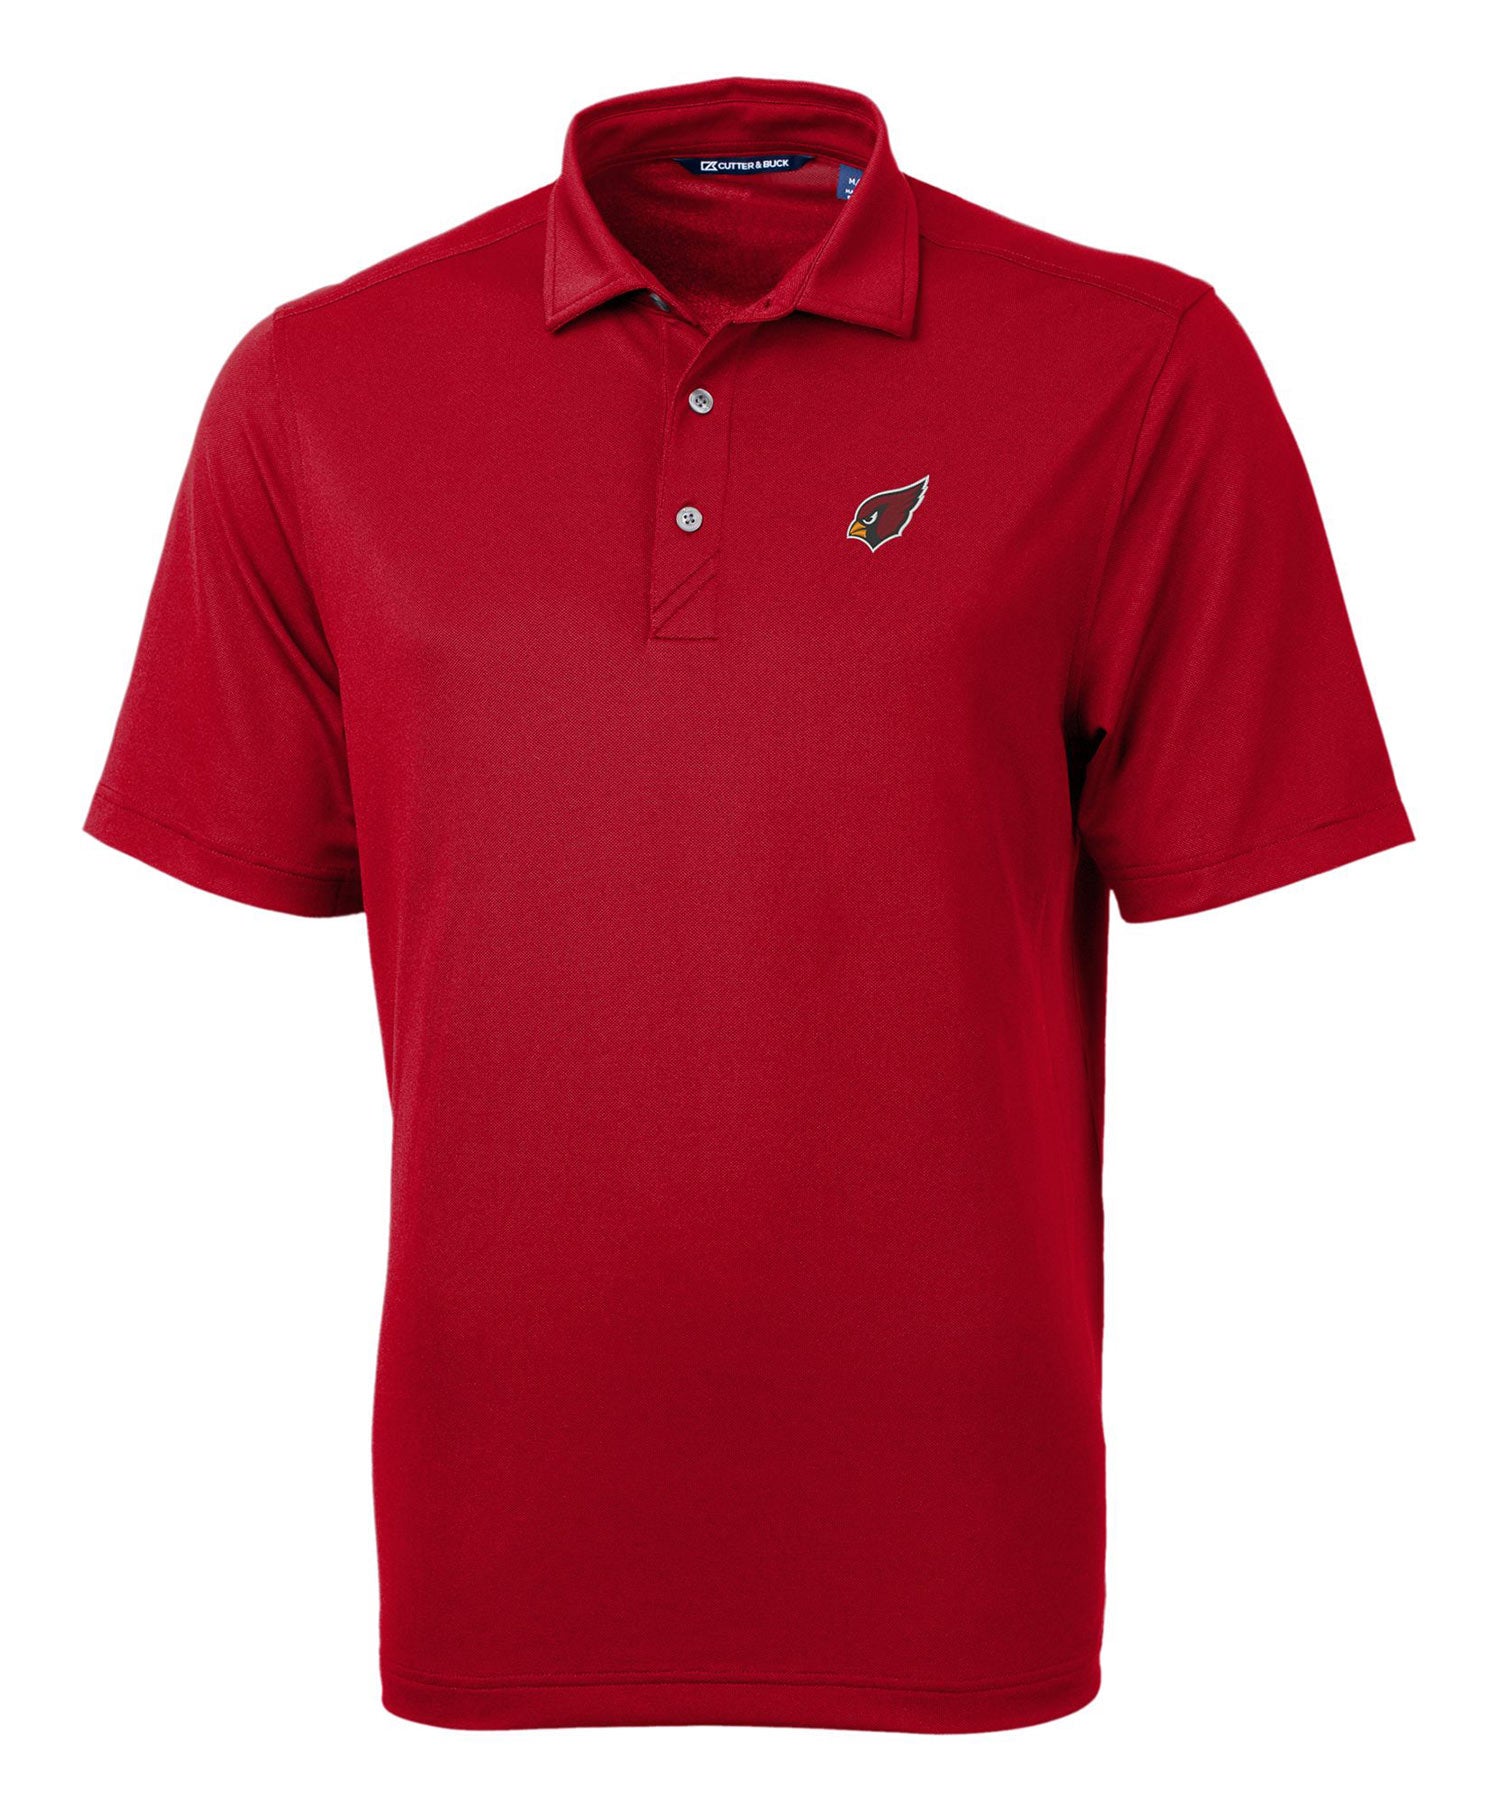 Cutter & Buck Arizona Cardinals Short Sleeve Polo Knit Shirt, Men's Big & Tall